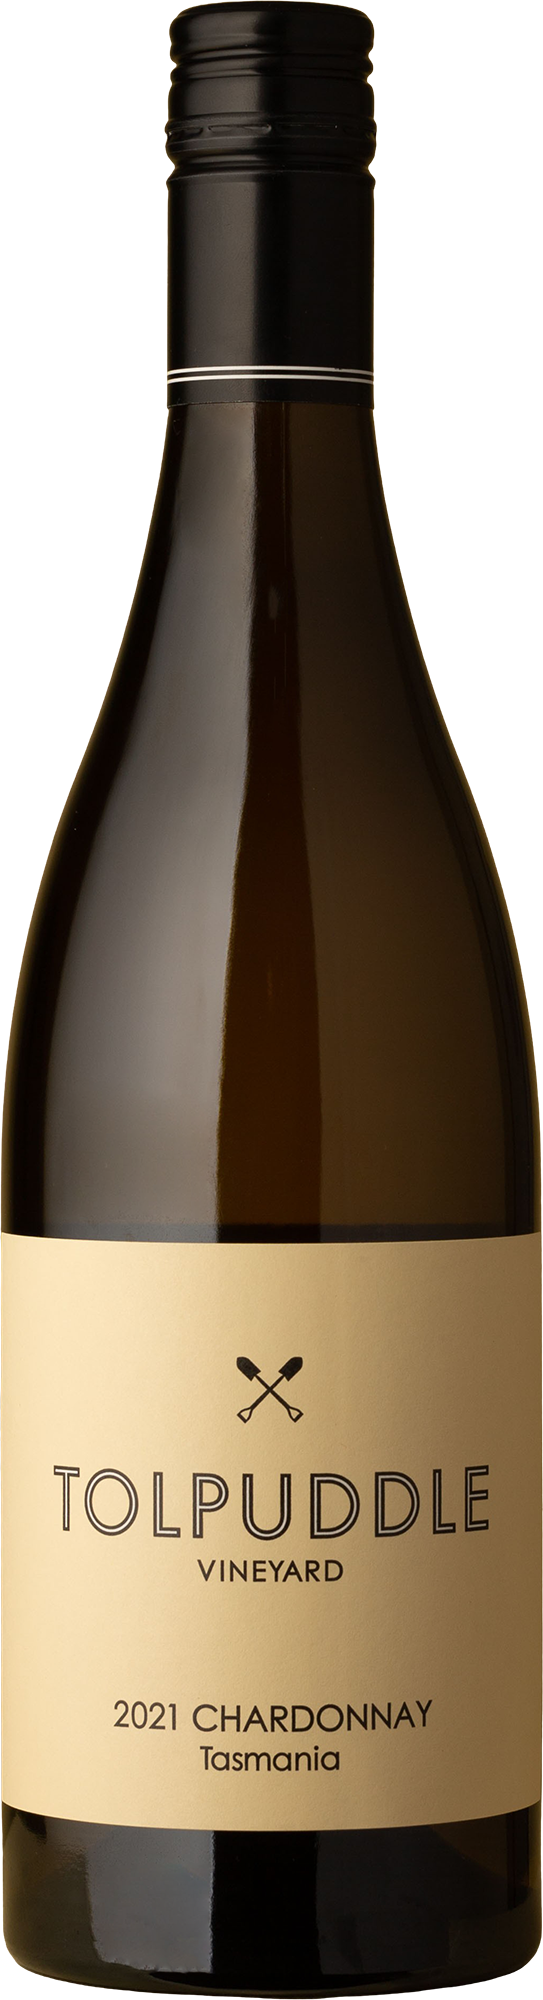 Tolpuddle - Chardonnay 2021 White Wine